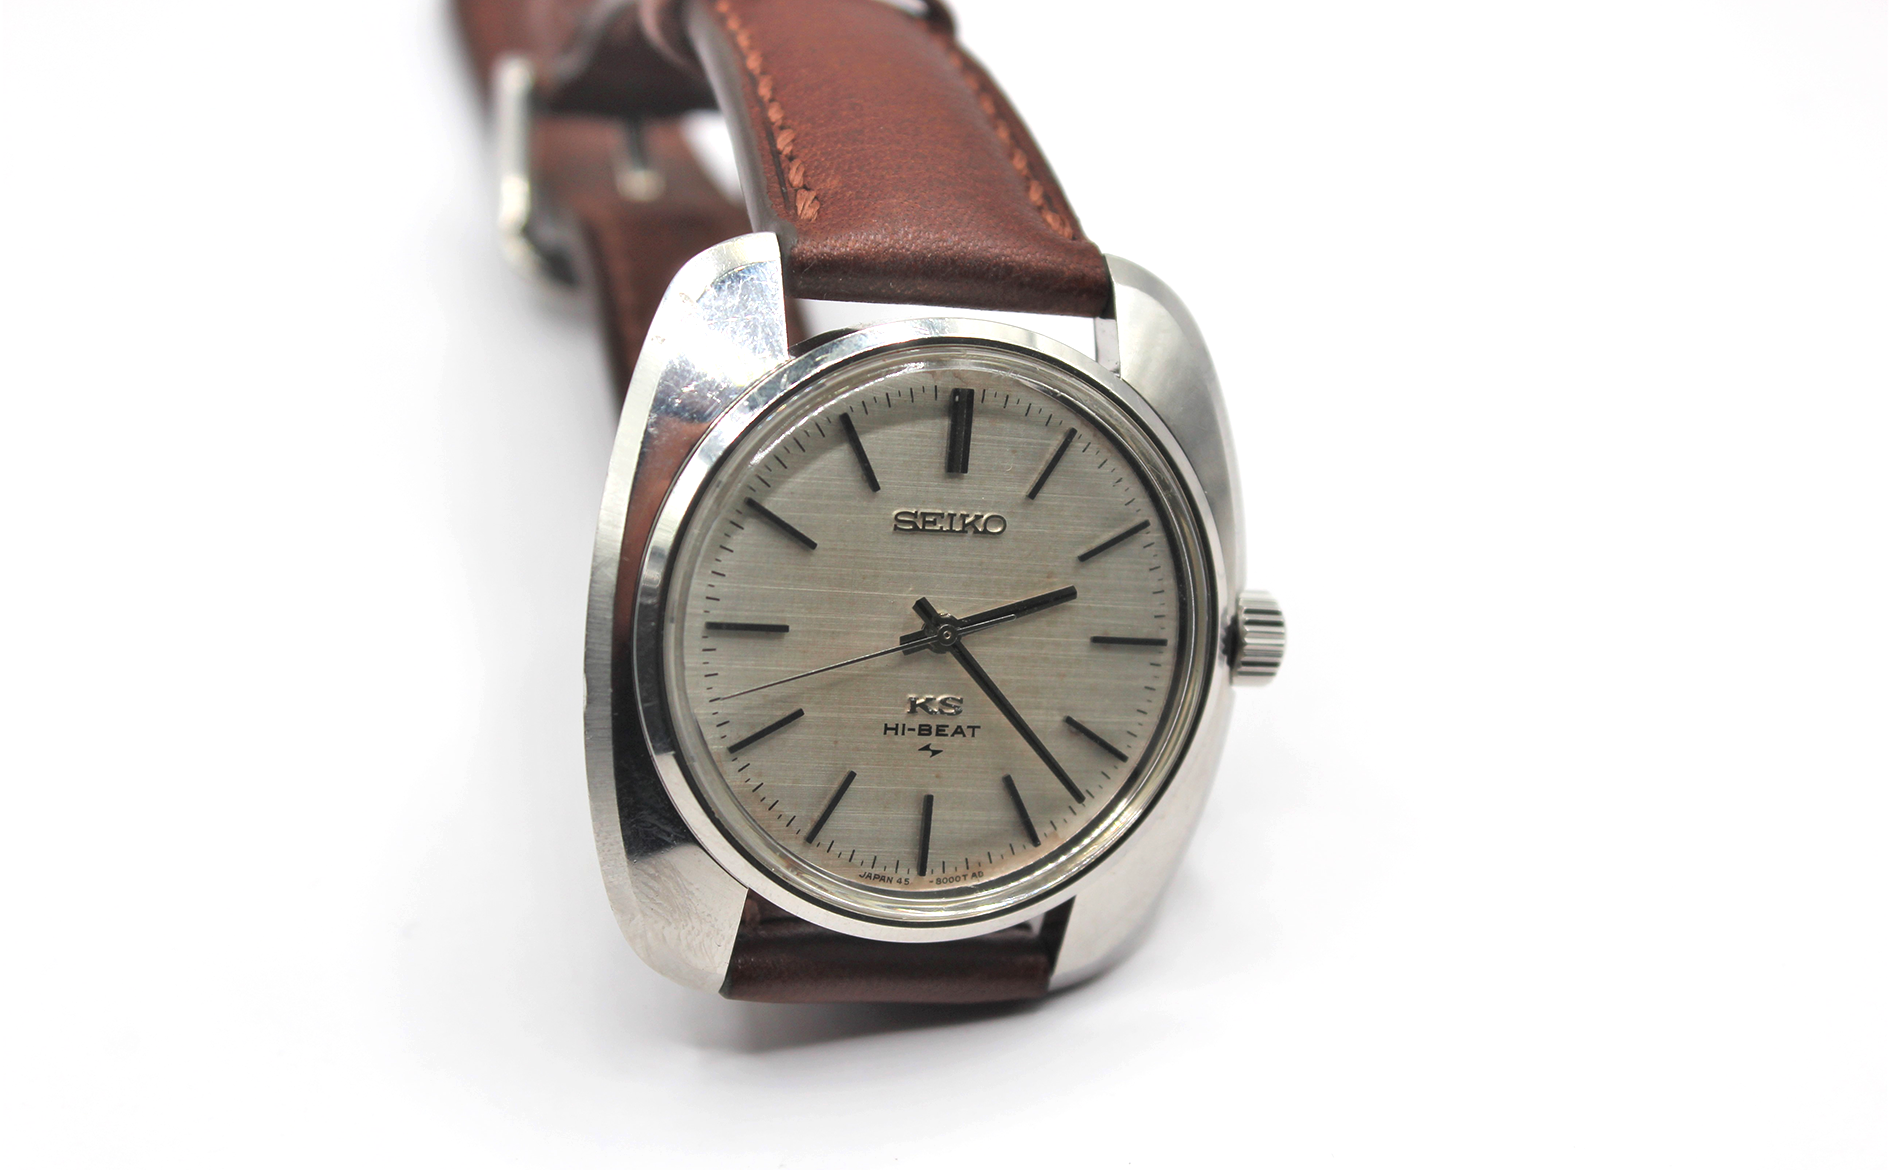 Vintage King Seiko Hi-Beat 45-8000 Serviced - Toronto Vintage Watches -  Vintage Seiko passion